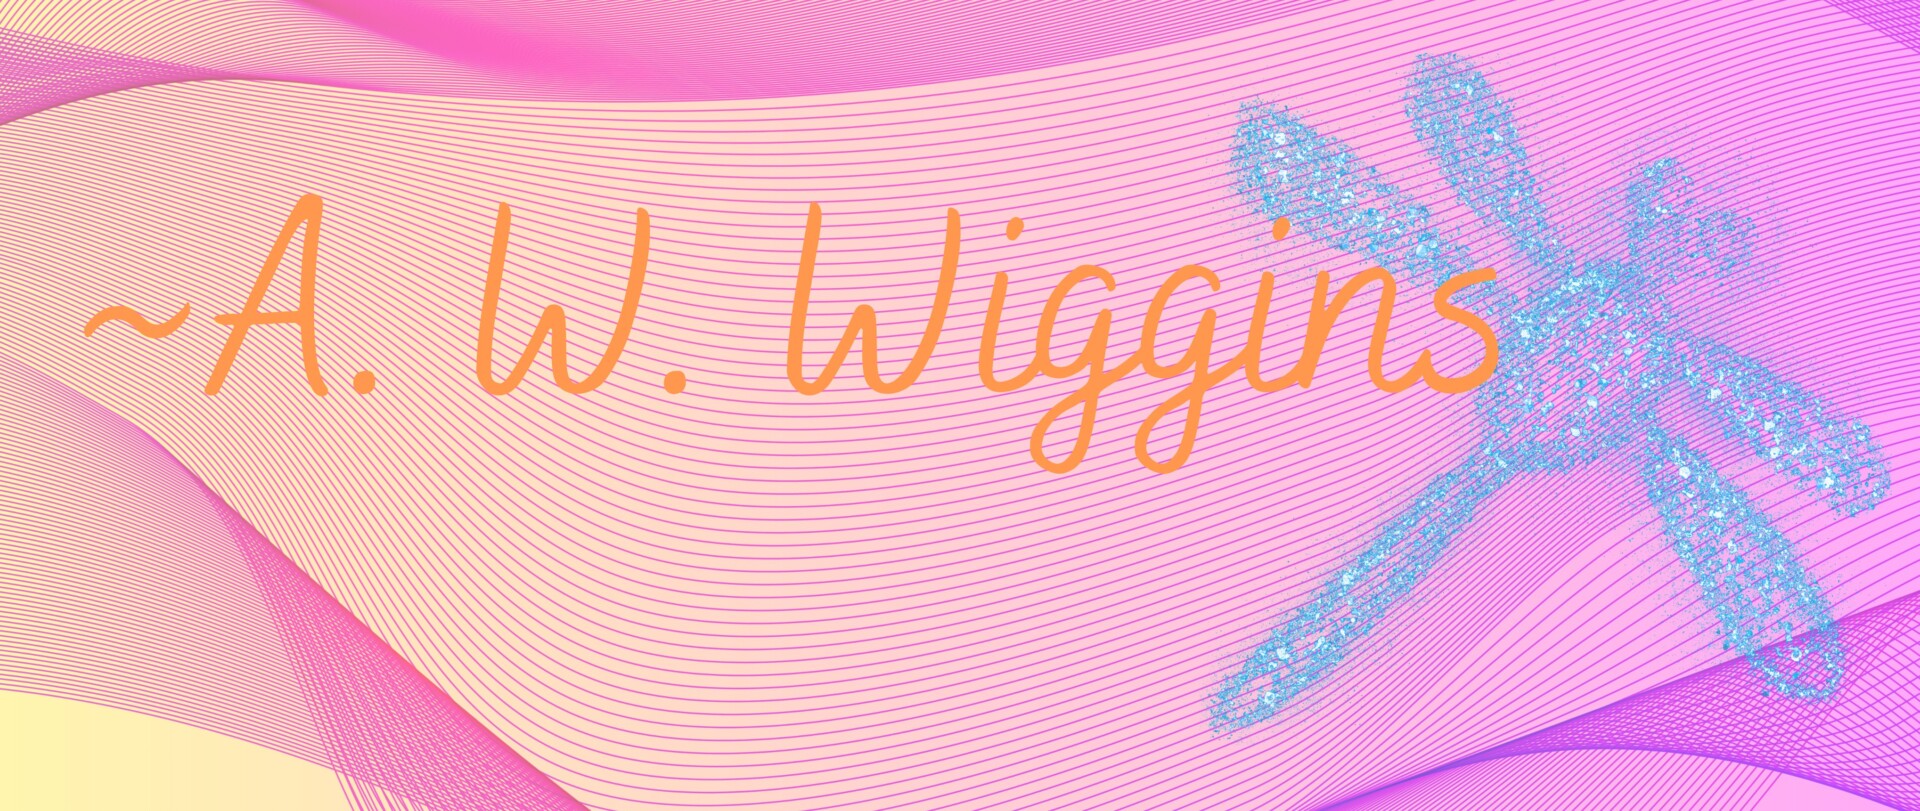 A..W. Wiggins' Signature